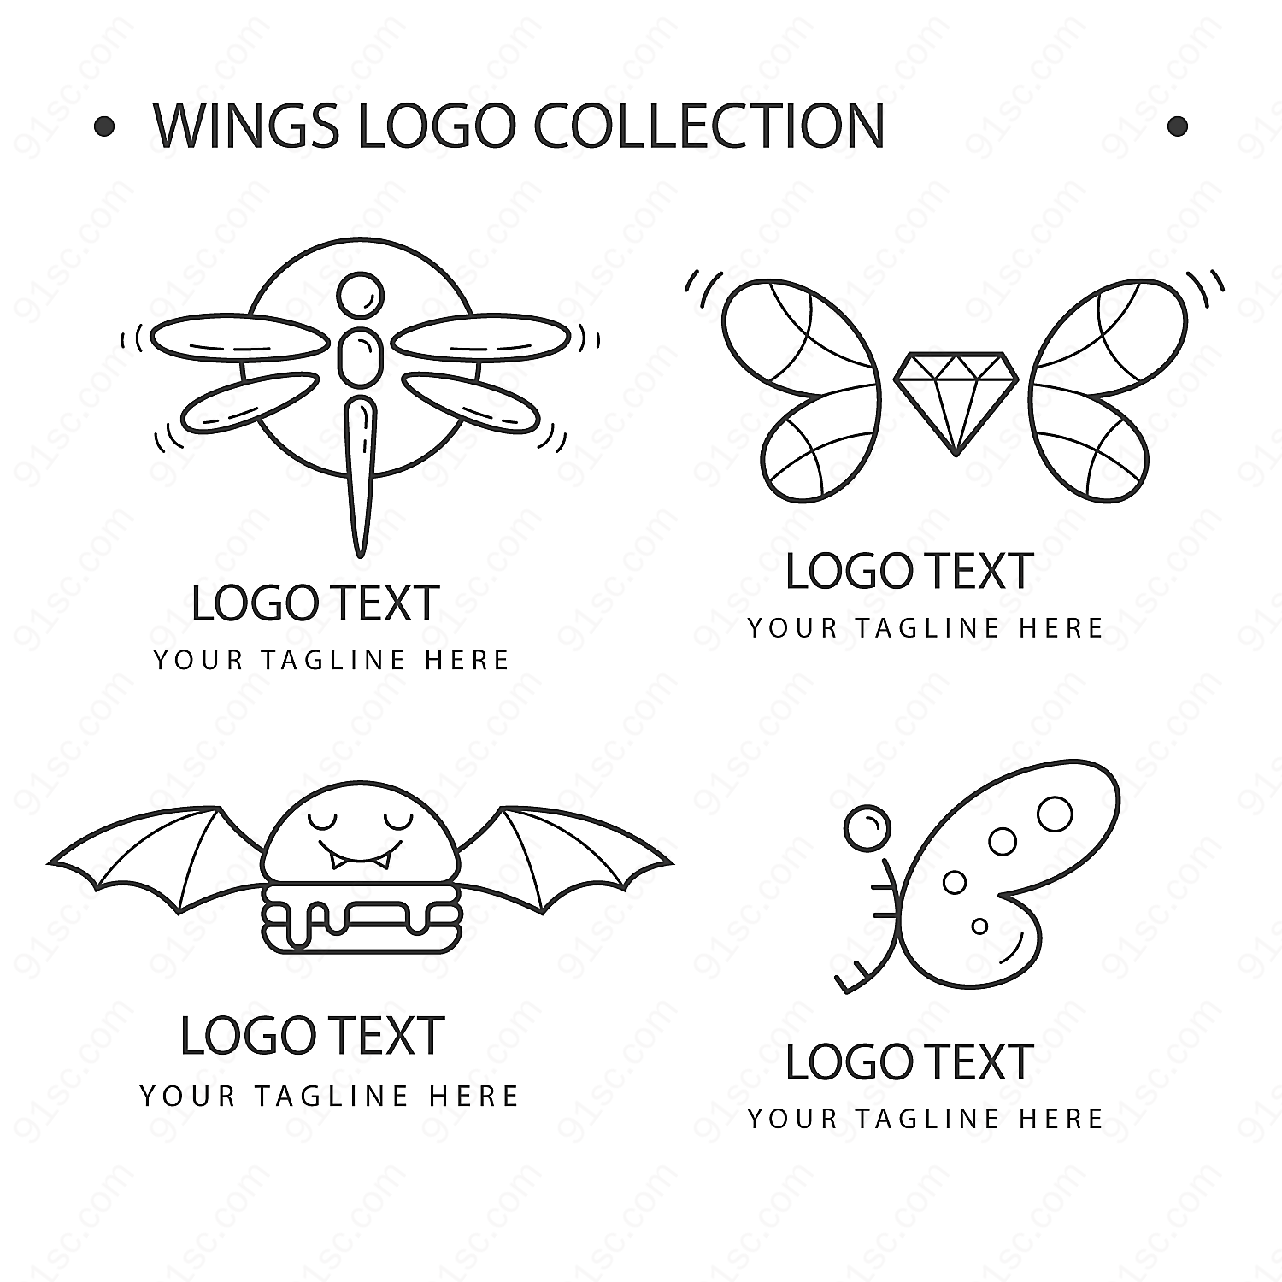 翅膀标志矢量矢量logo图形